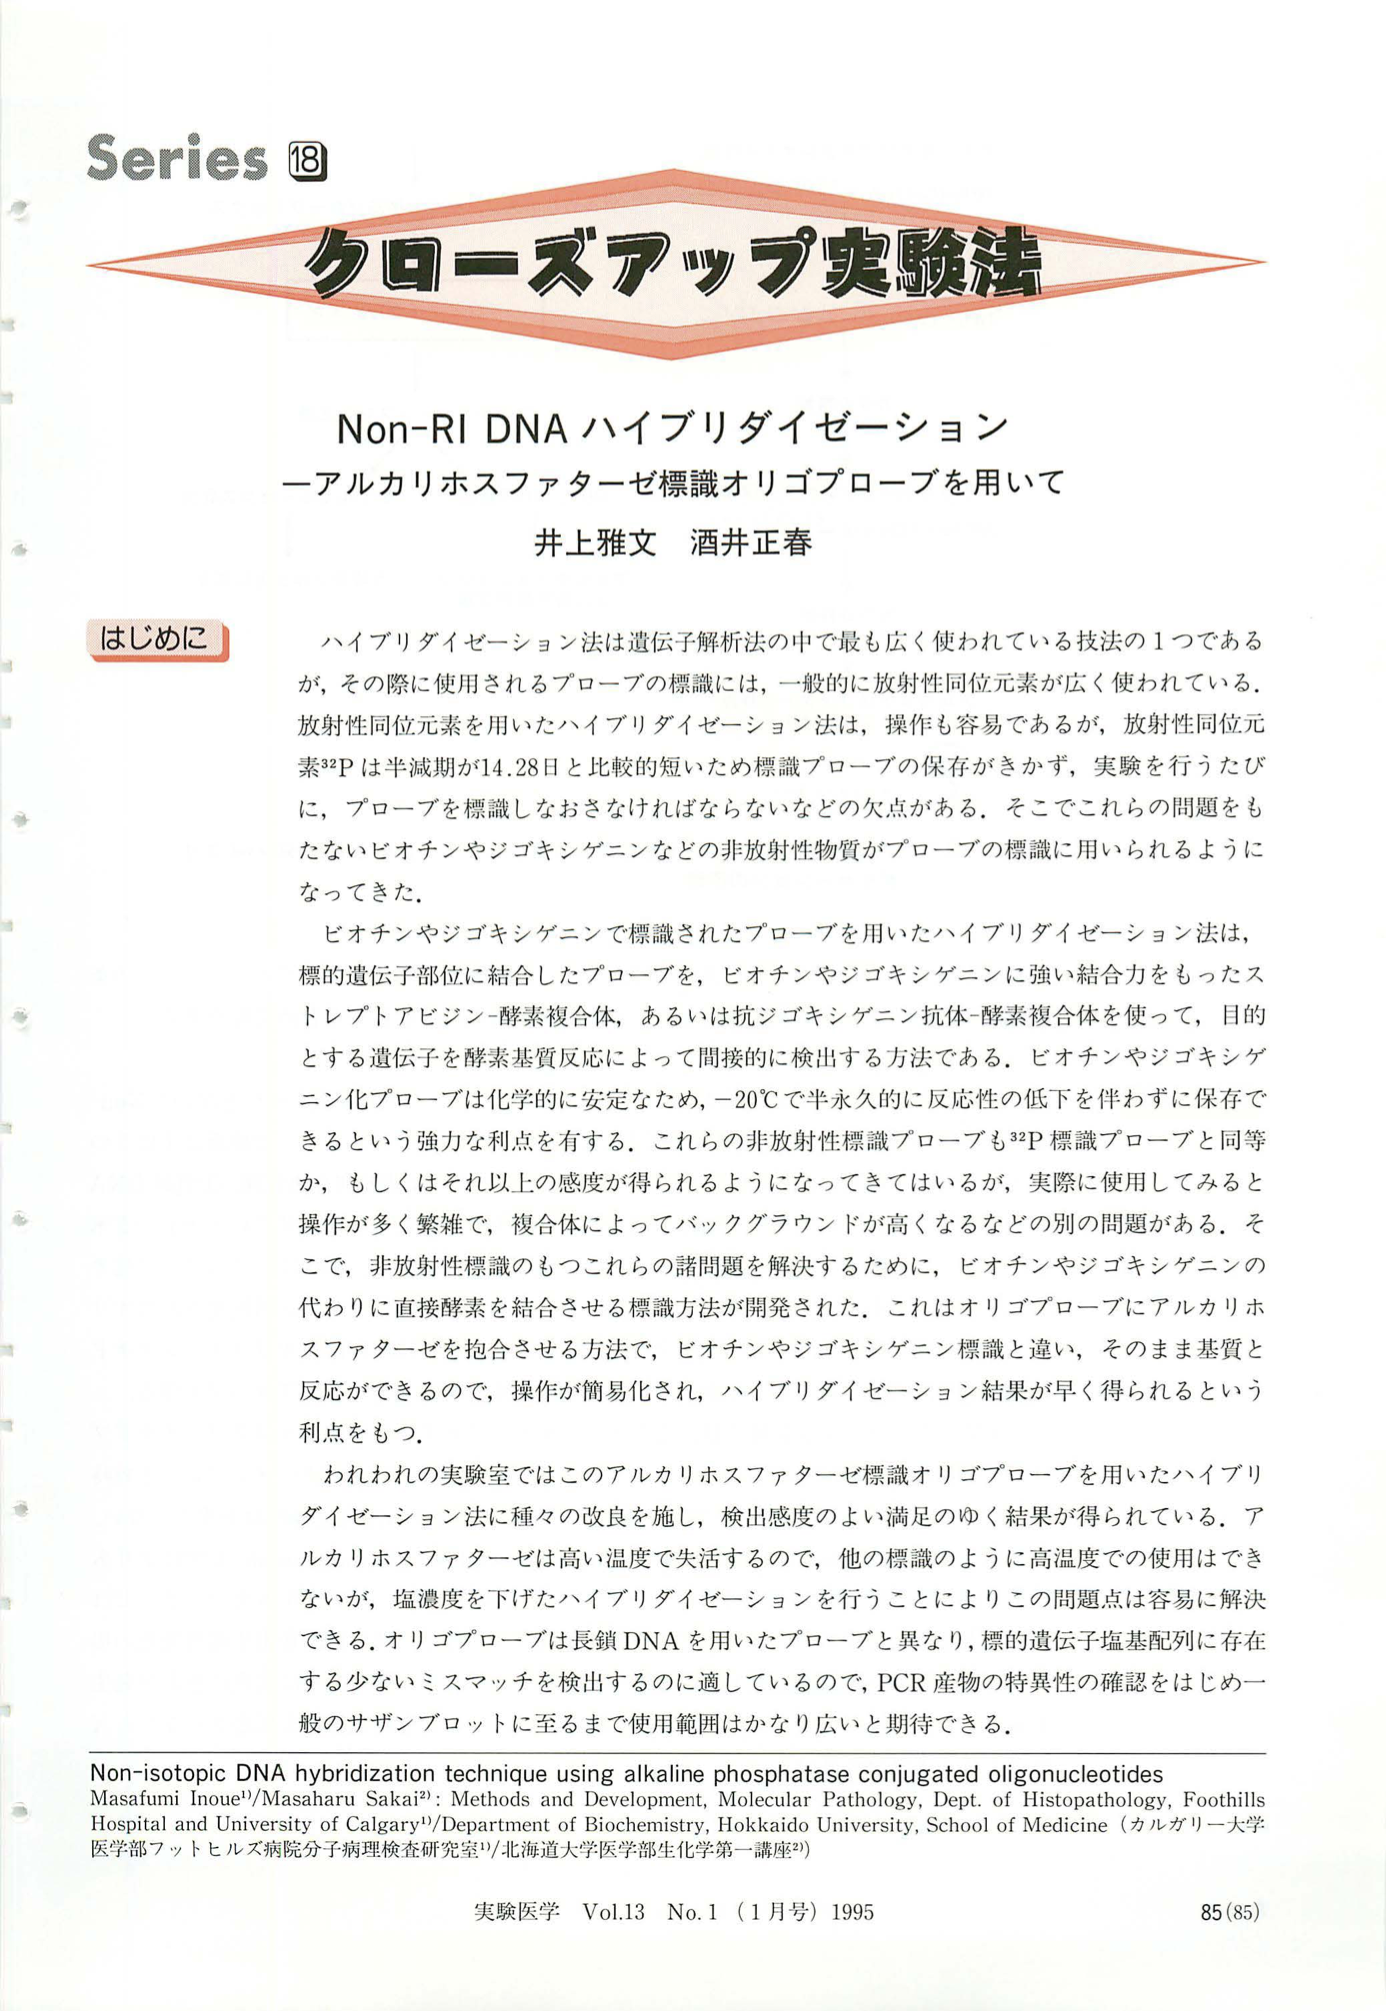 Non-RI DNAハイブリダイゼーション−アルカリホスファターゼ標識オリゴプローブを用いて